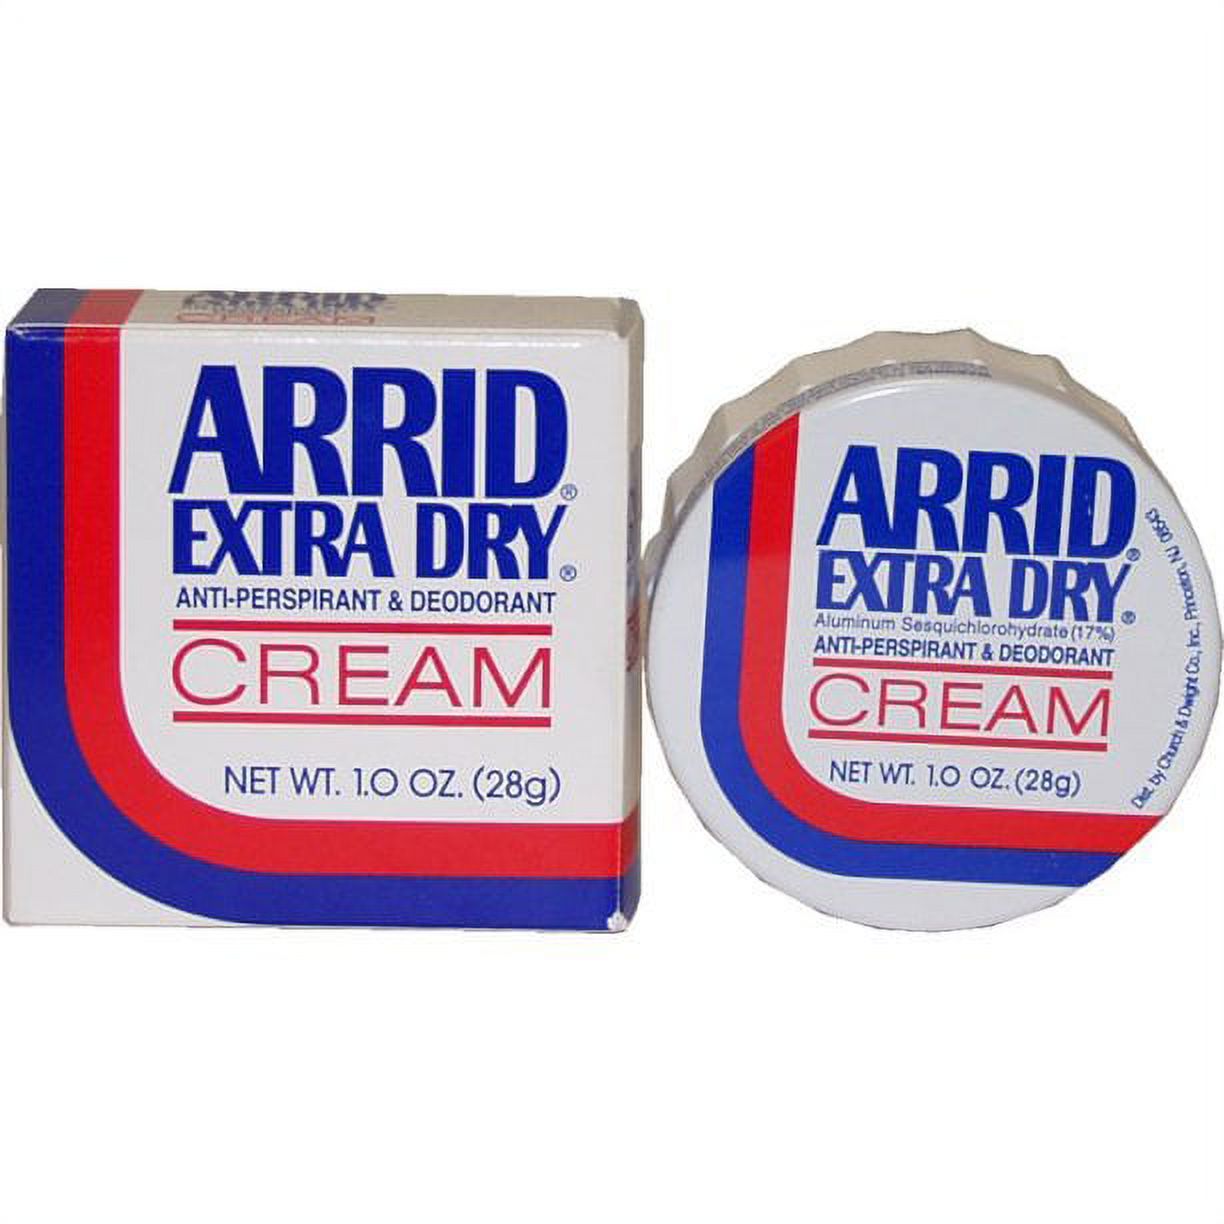 Arrid Extra Dry Anti-Perspirant/Deodorant Cream, 1.0 oz. - image 2 of 5